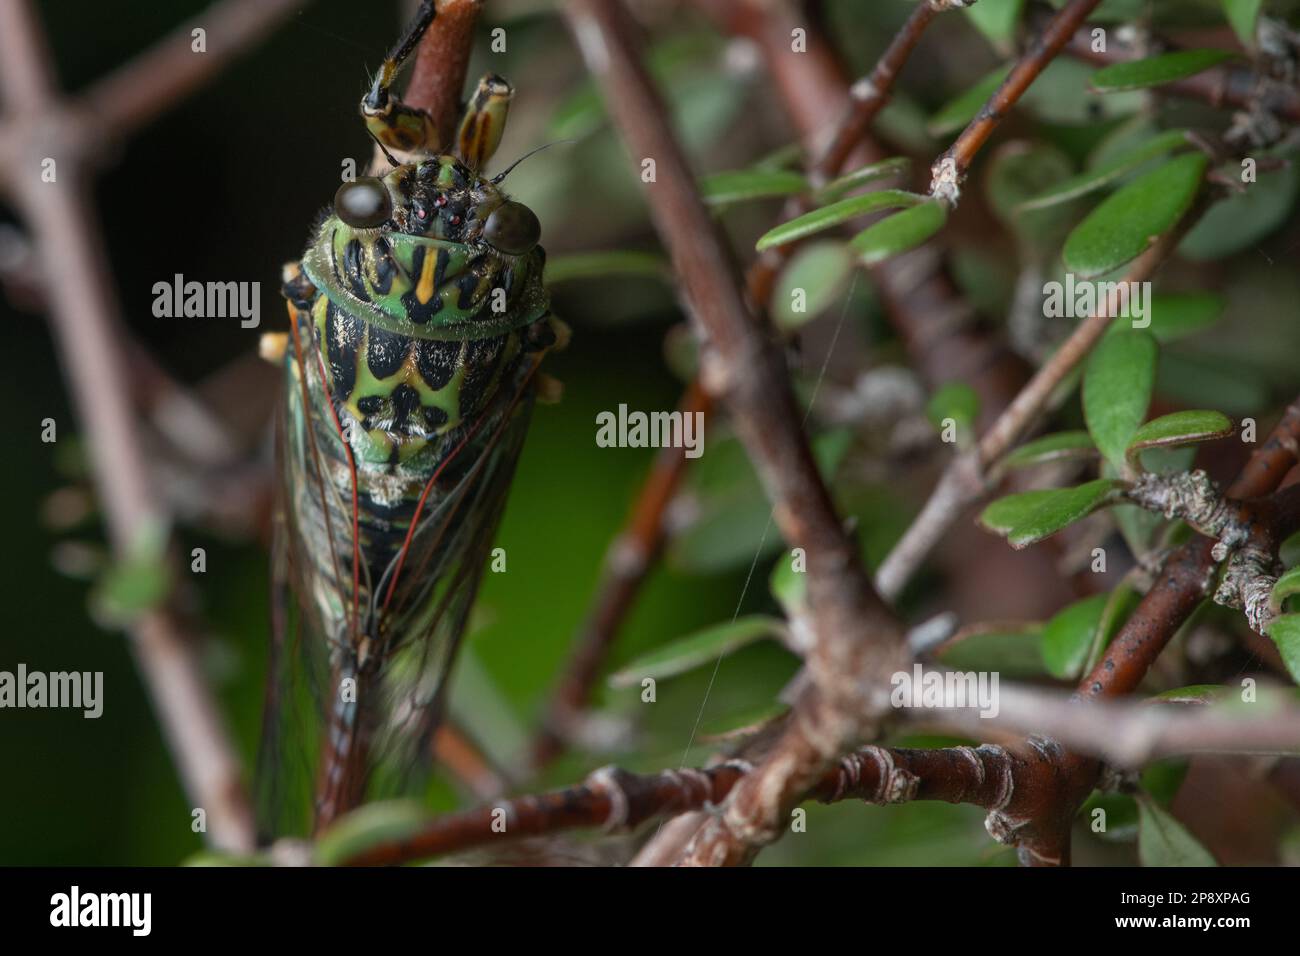 Ein erwachsener Chor cicada, Amphipsalta zelandica, hoch oben auf einem coprosma-Busch in der canterbury-Region von Aotearoa Neuseeland. Stockfoto